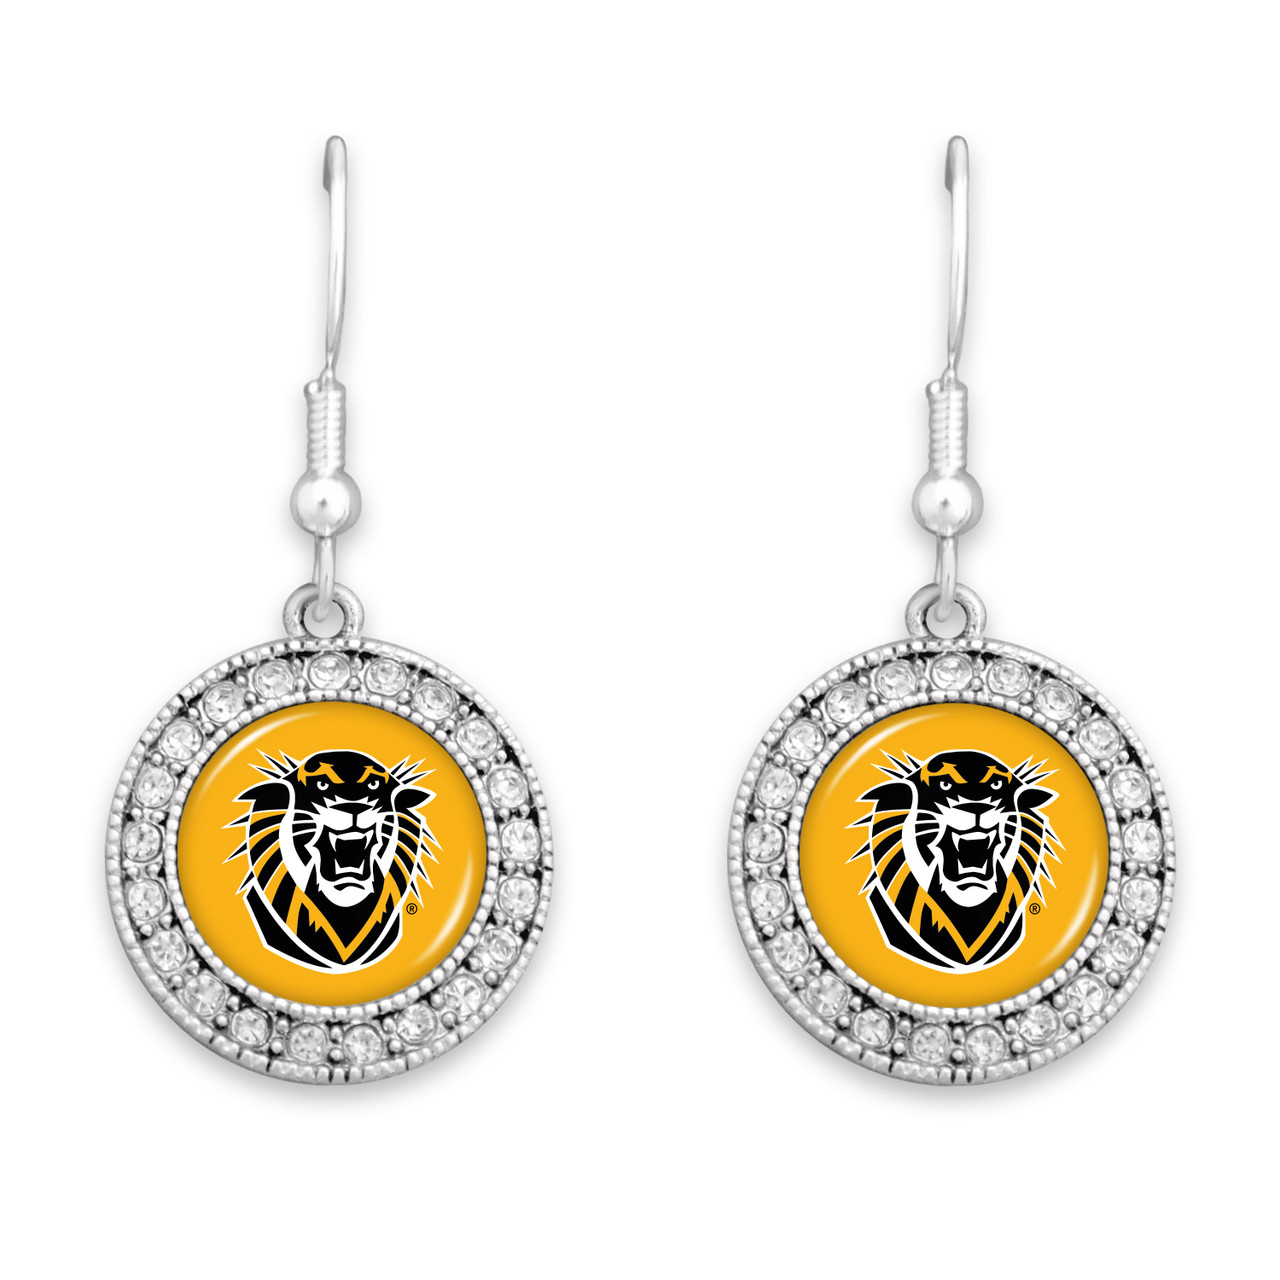 Fort Hays State Tigers Earrings- Kenzie